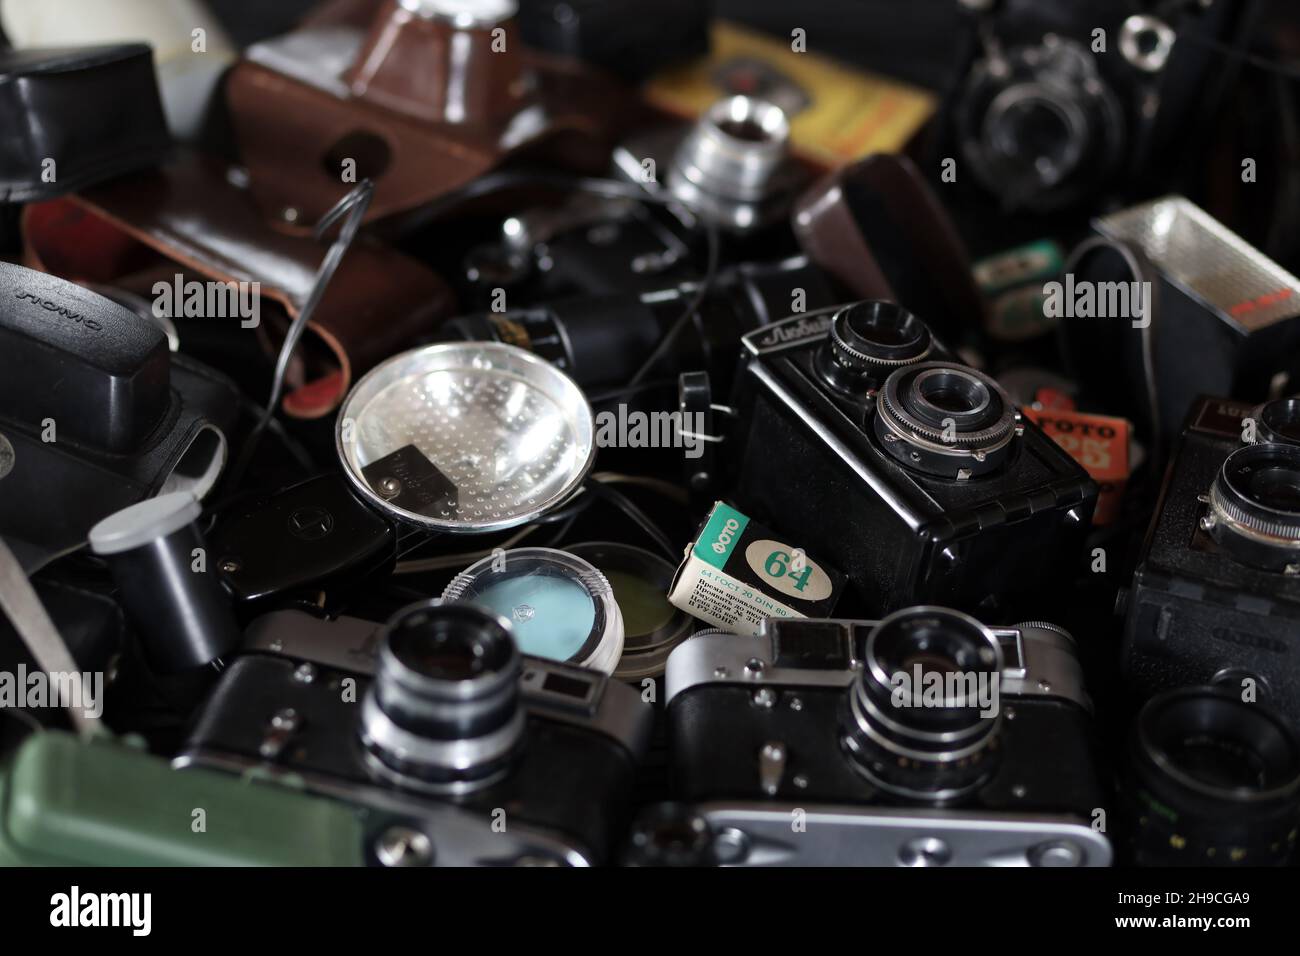 CHARKOV, UKRAINE - 27. APRIL 2021: Filmkameras und eine andere alte Retro-Fotoausrüstung auf schwarzem Holztisch in der Dunkelkammer des Fotografen. Foto Stockfoto